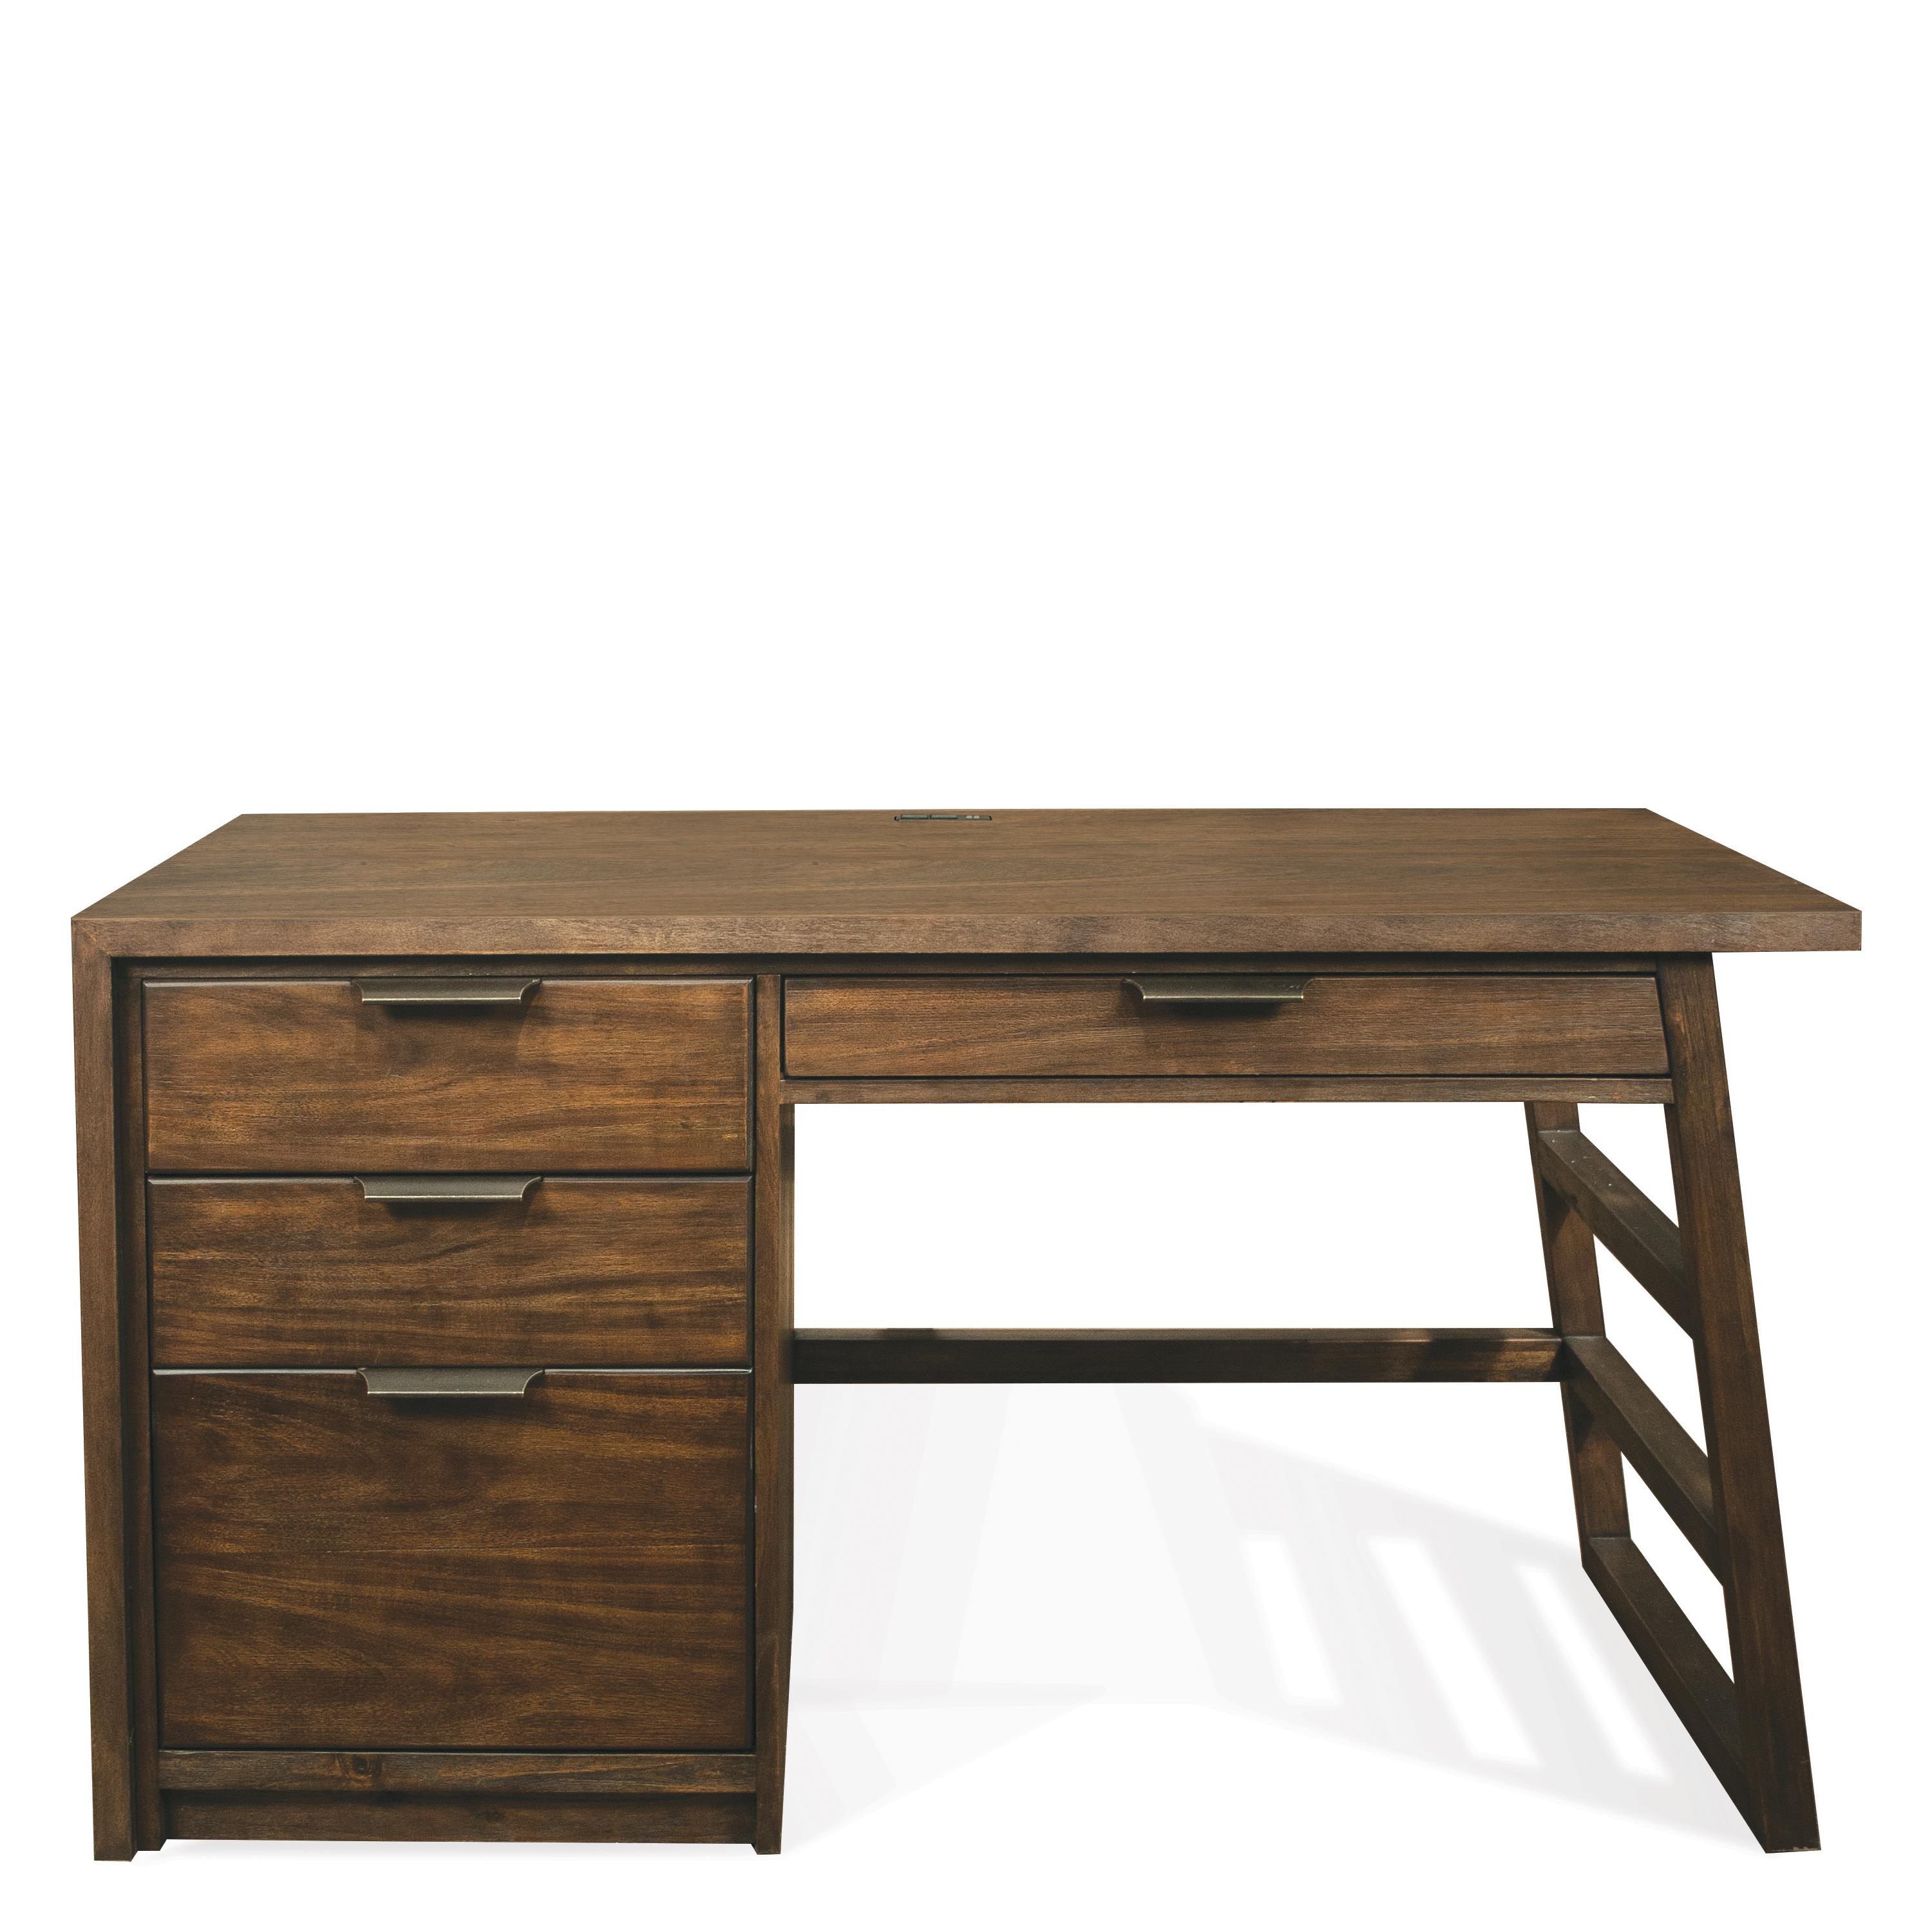 Riverside Furniture Perspectives 28030 Single Pedestal Desk with